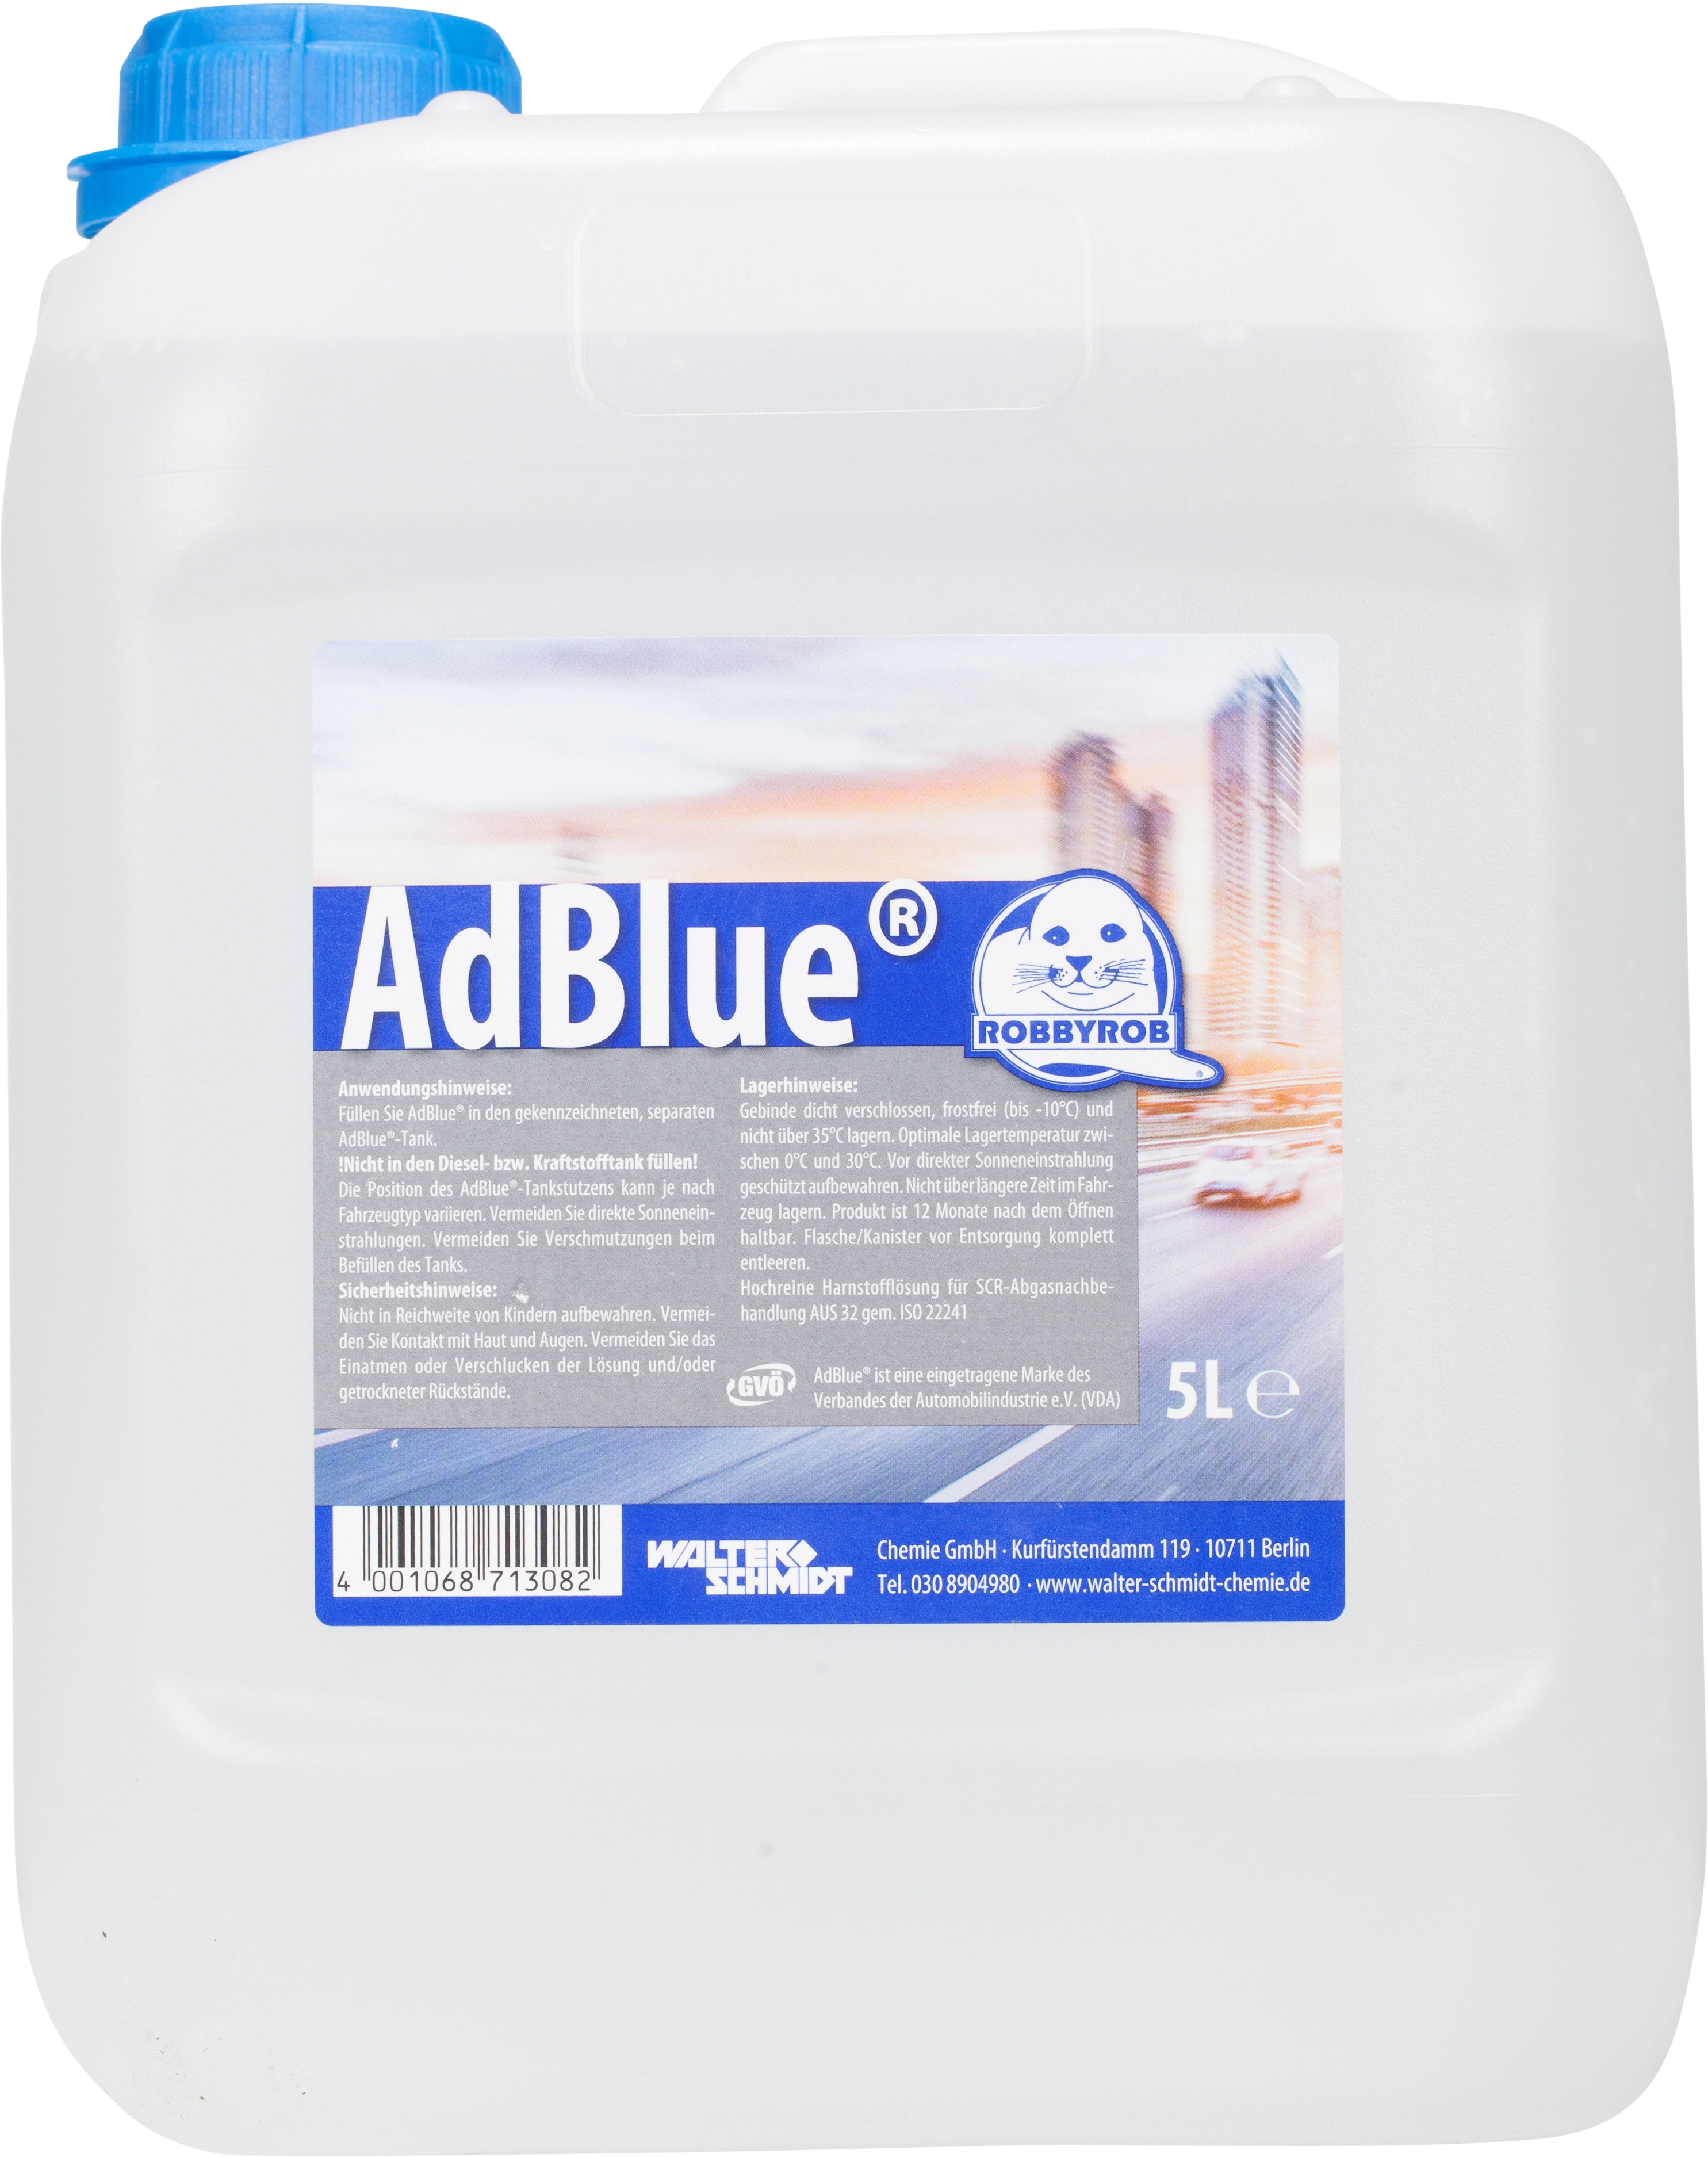 AdBlue 5L 